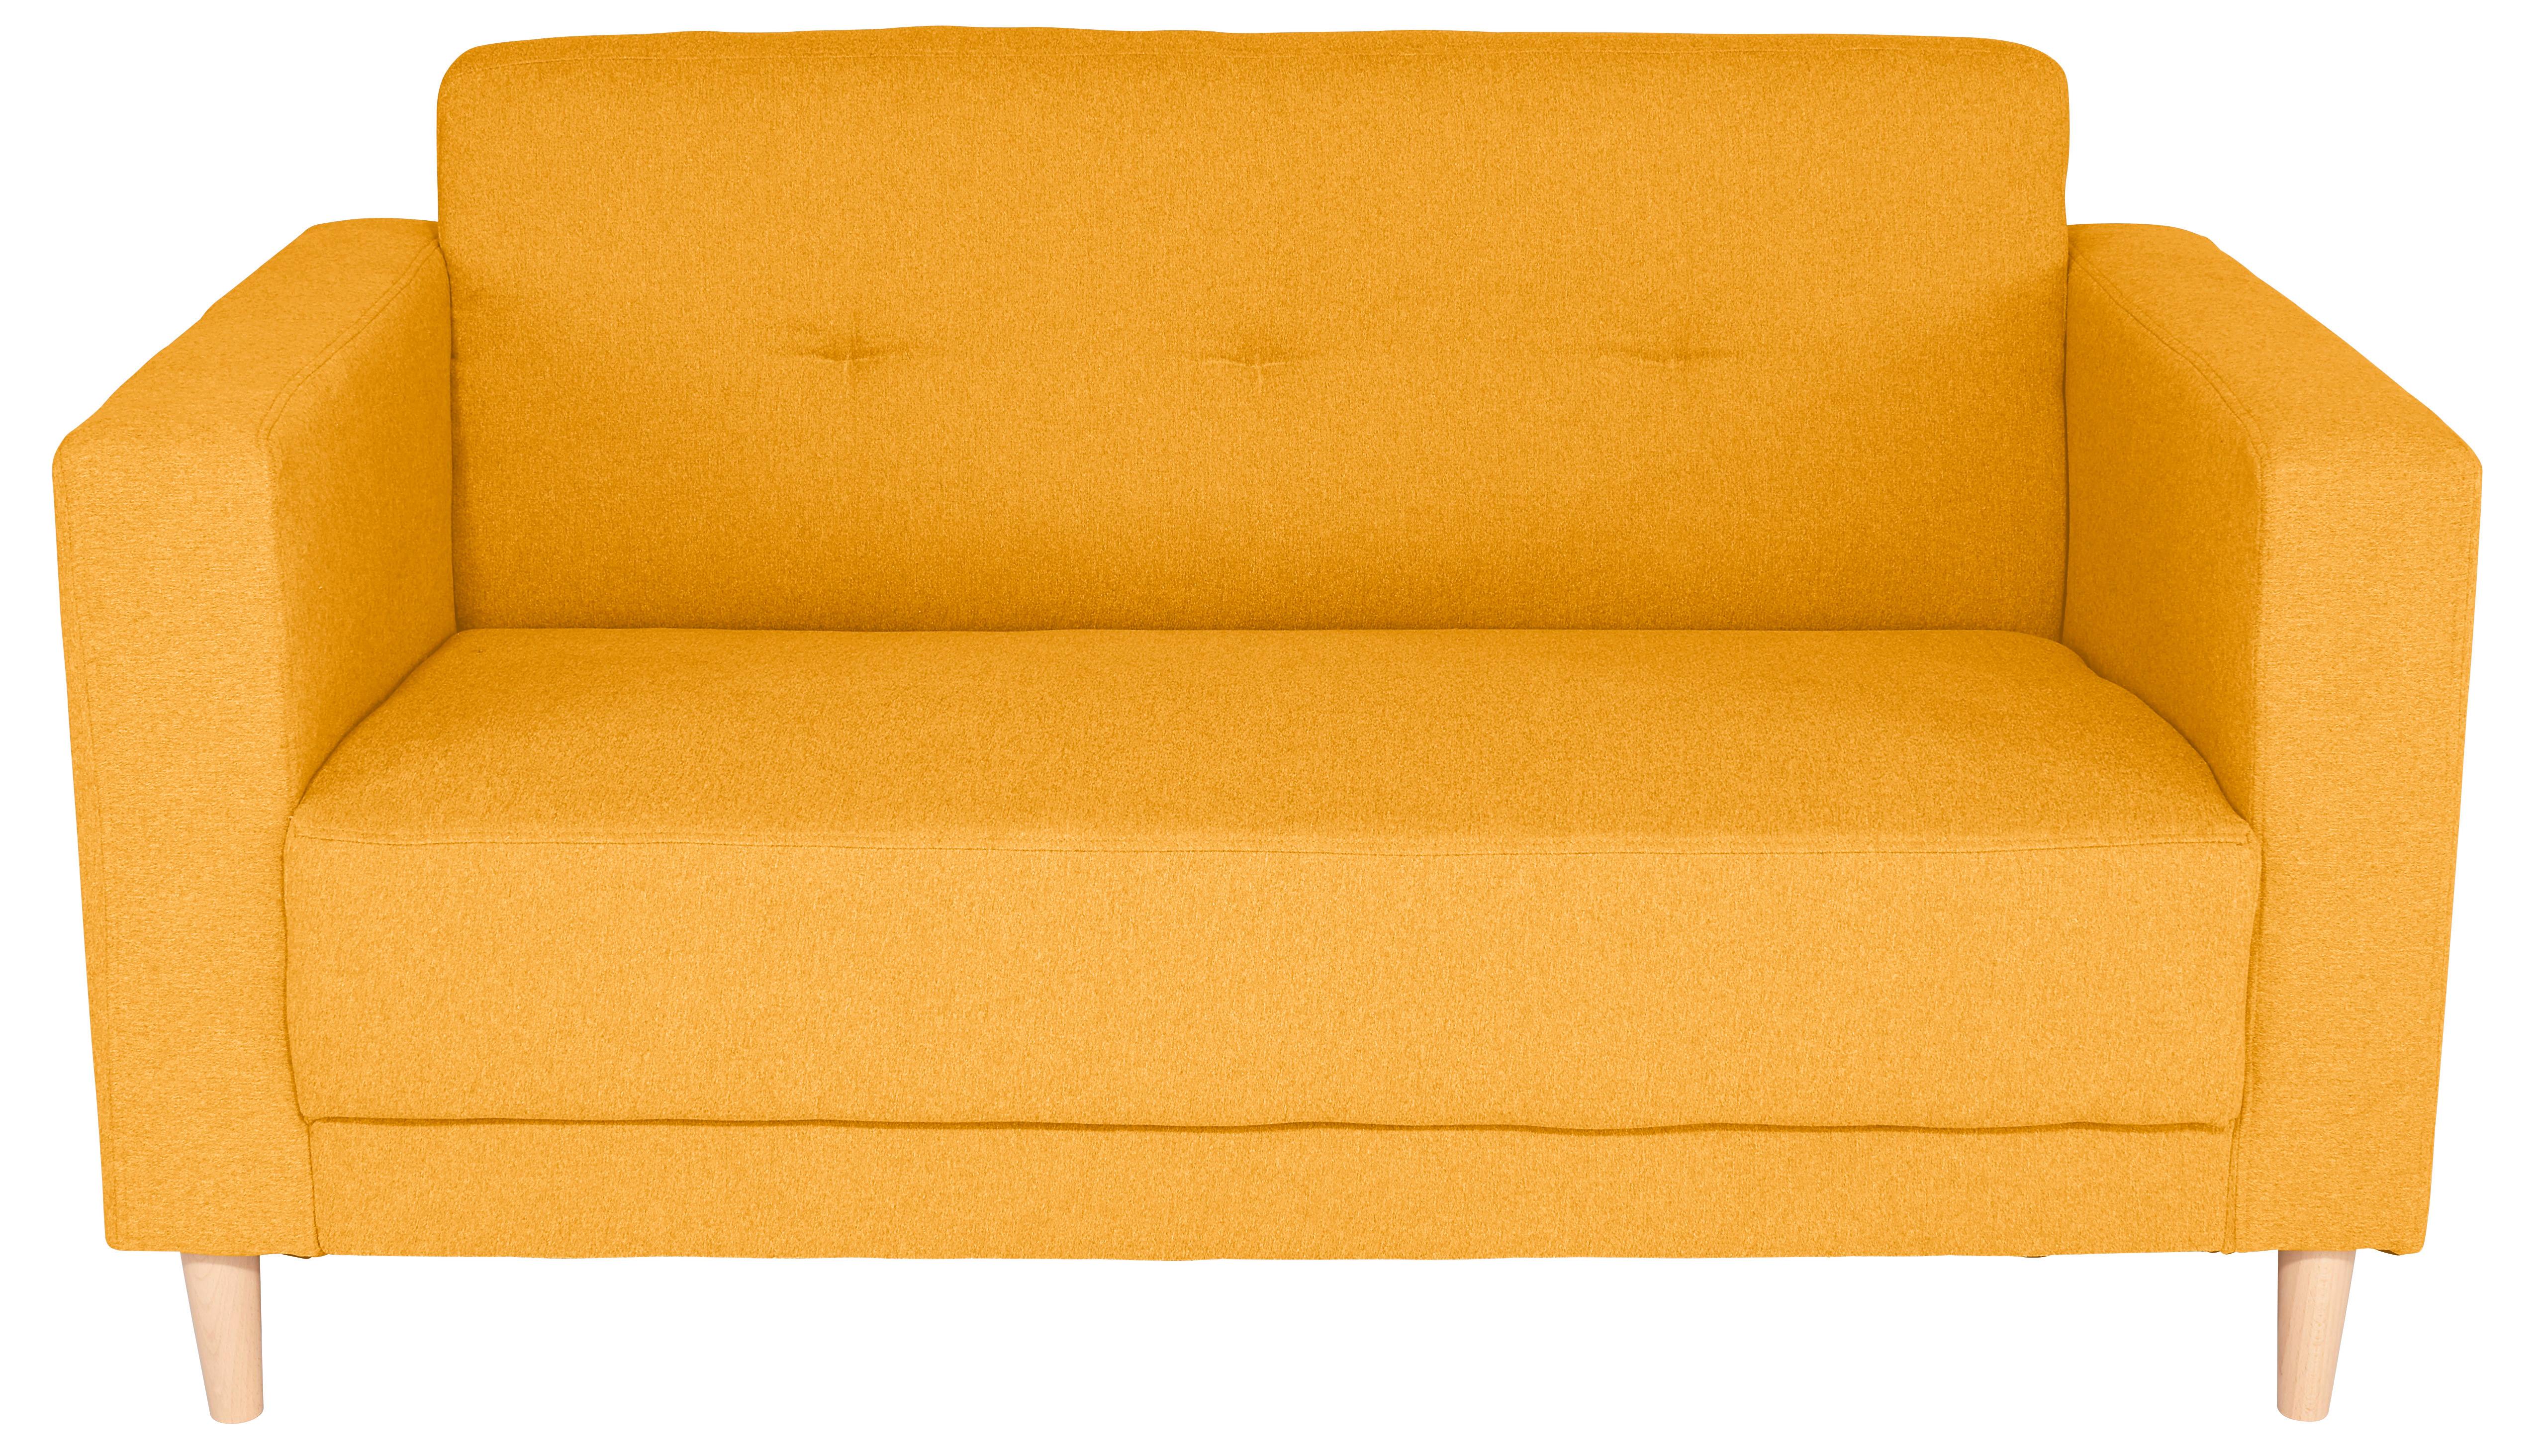 Zweisitzer-Sofa Geneve, Webstoff - Gelb/Naturfarben, MODERN, Textil (148/81/75cm)